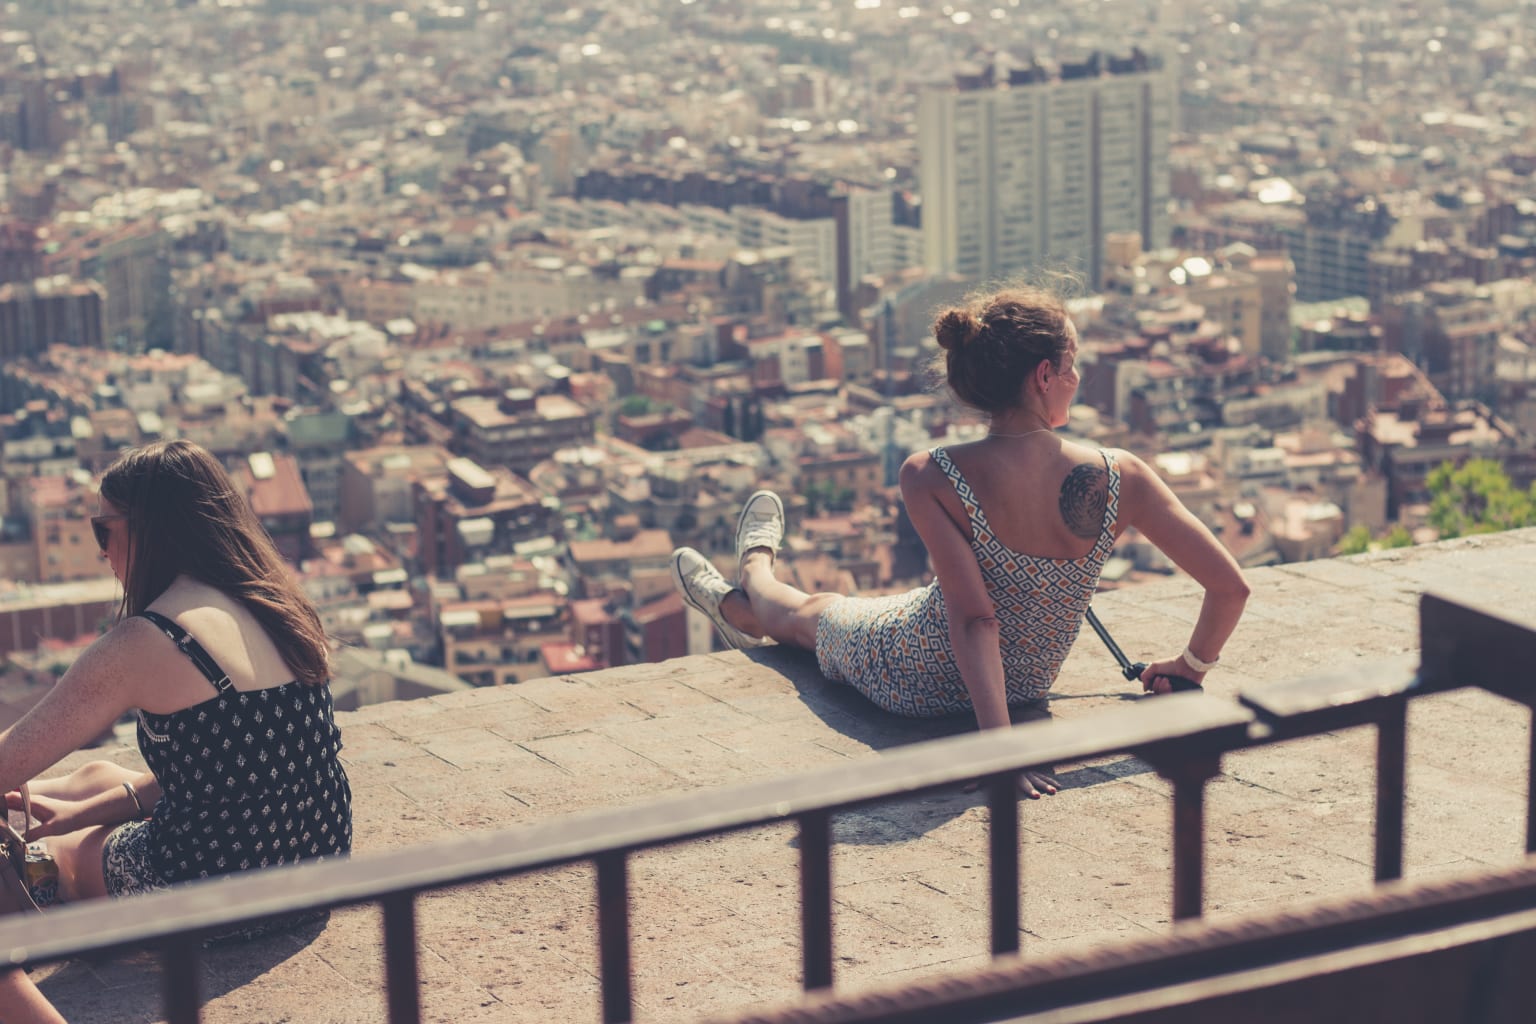 Girls sitting on ledge.